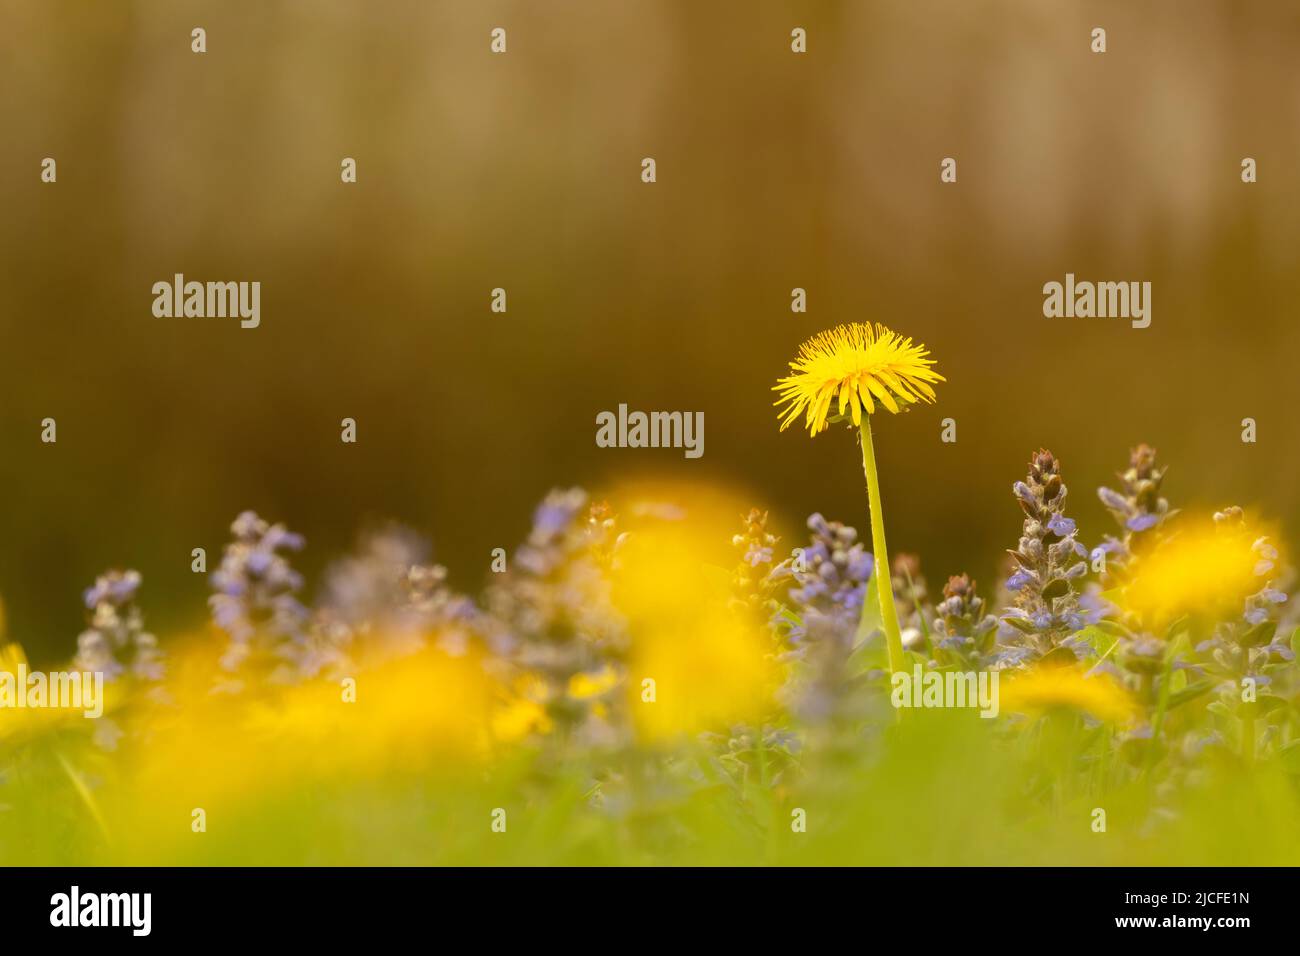 Bgleweed blüht auf einer dichten Blumenwiese mit dem Elandelion im Frühjahr, fotografiert zwischen gelben Edelblumenblüten, dominiert das Goldgelb und leuchtet. Stockfoto